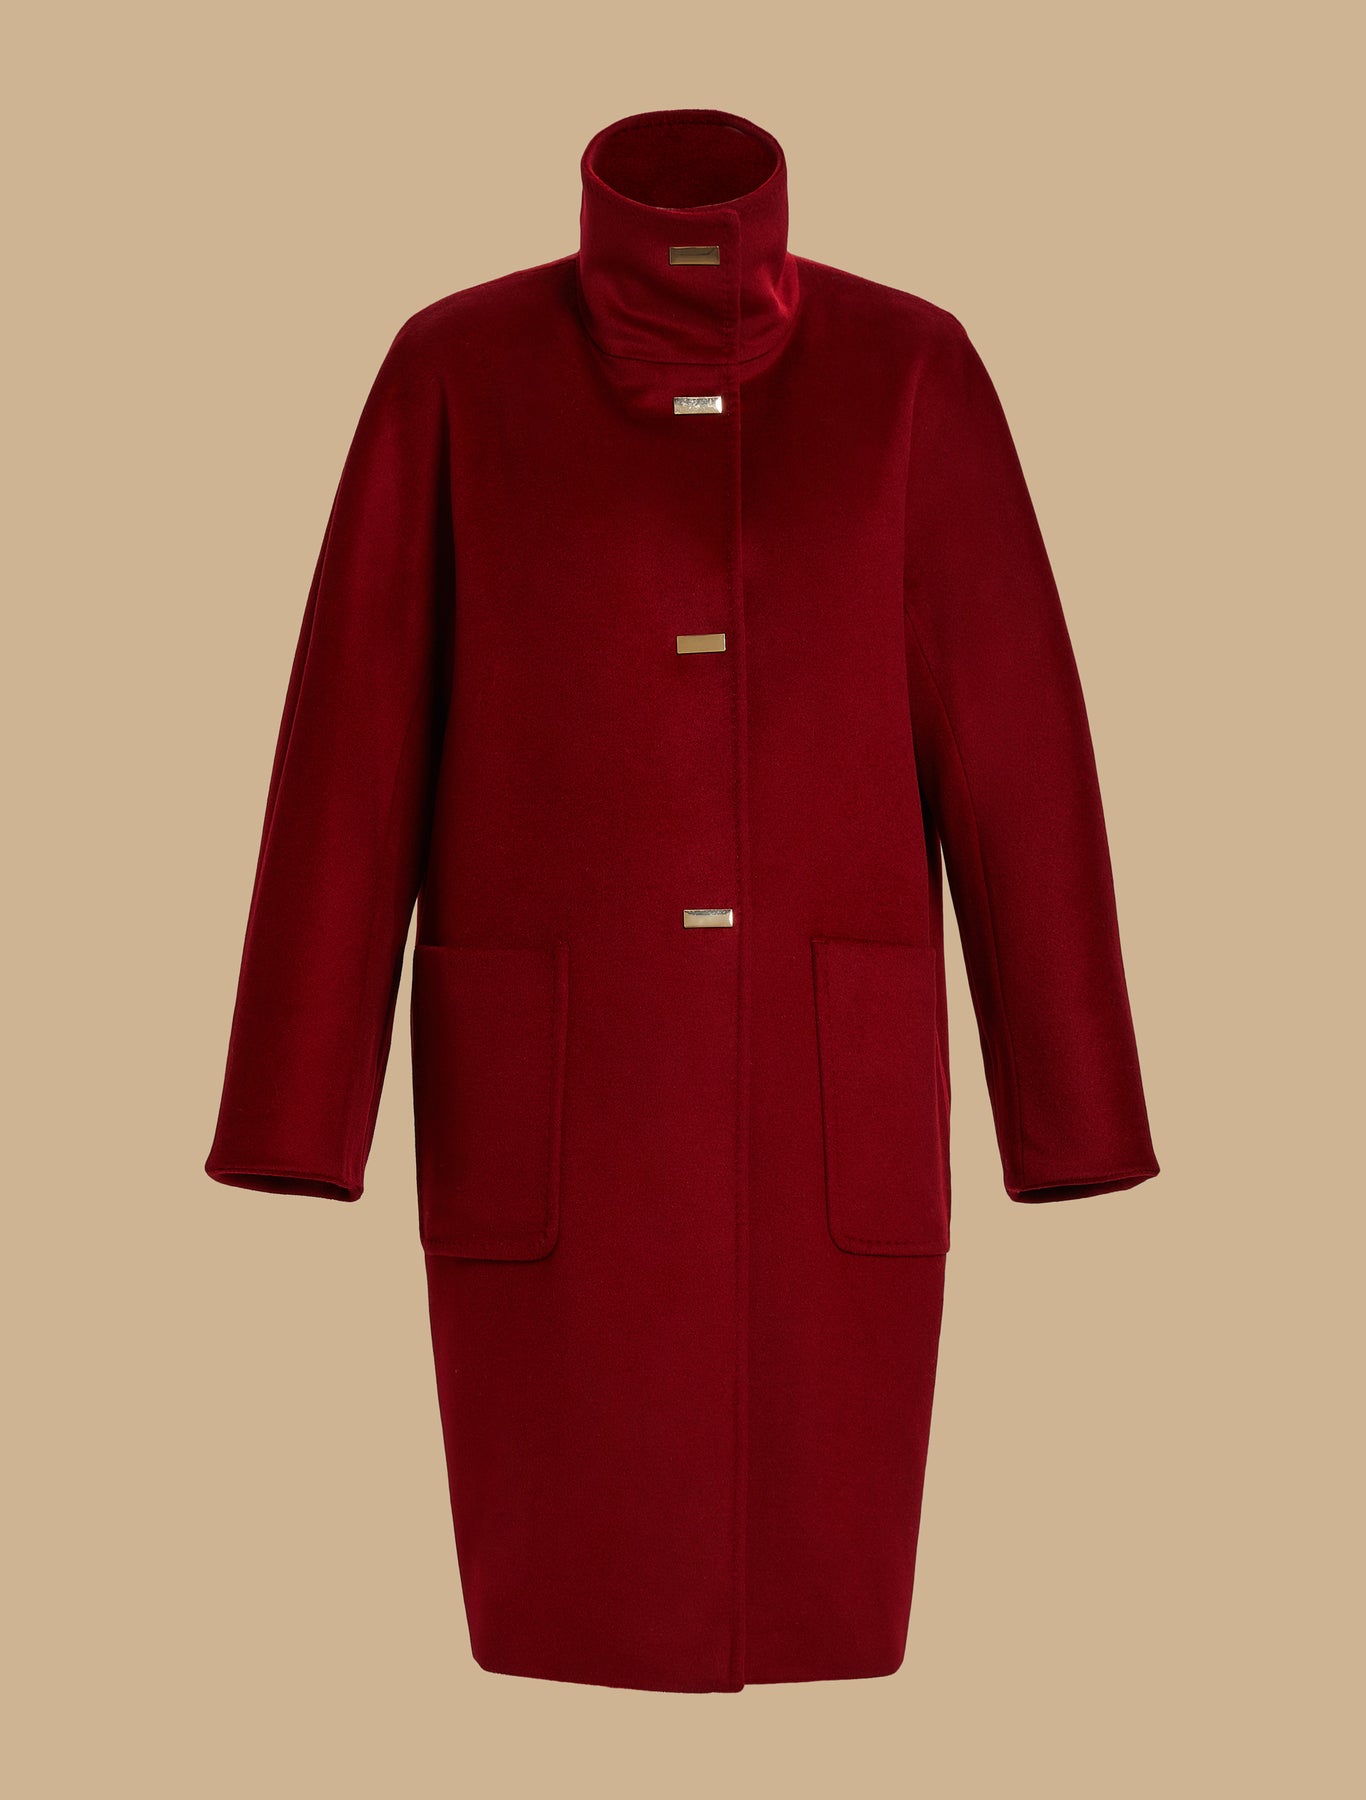 Marina Rinaldi Trionfo Pure Wool Coat in Rossa